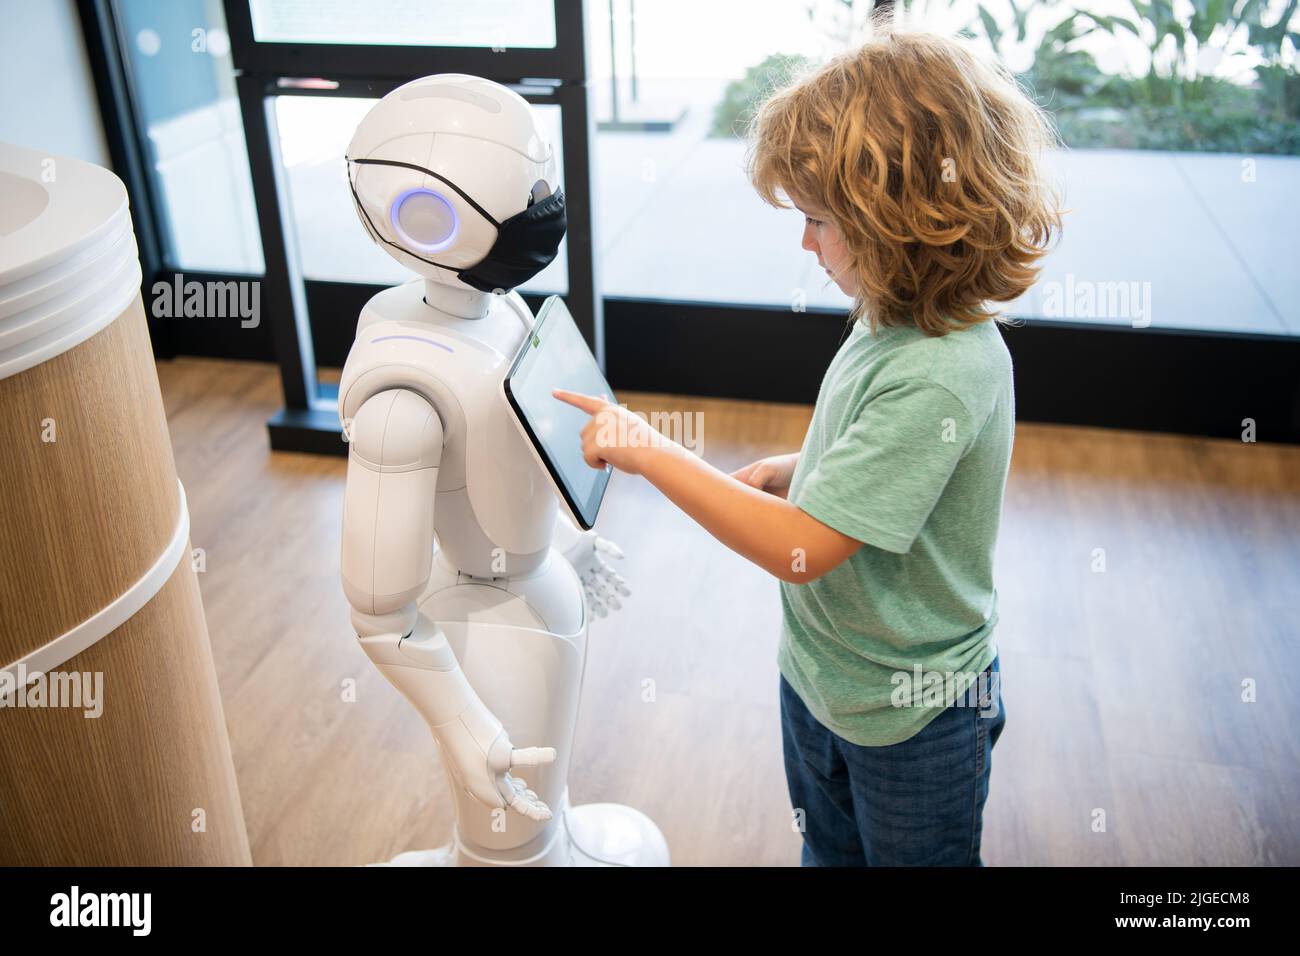 curieux enfant interagir avec robot intelligence artificielle, communication Banque D'Images